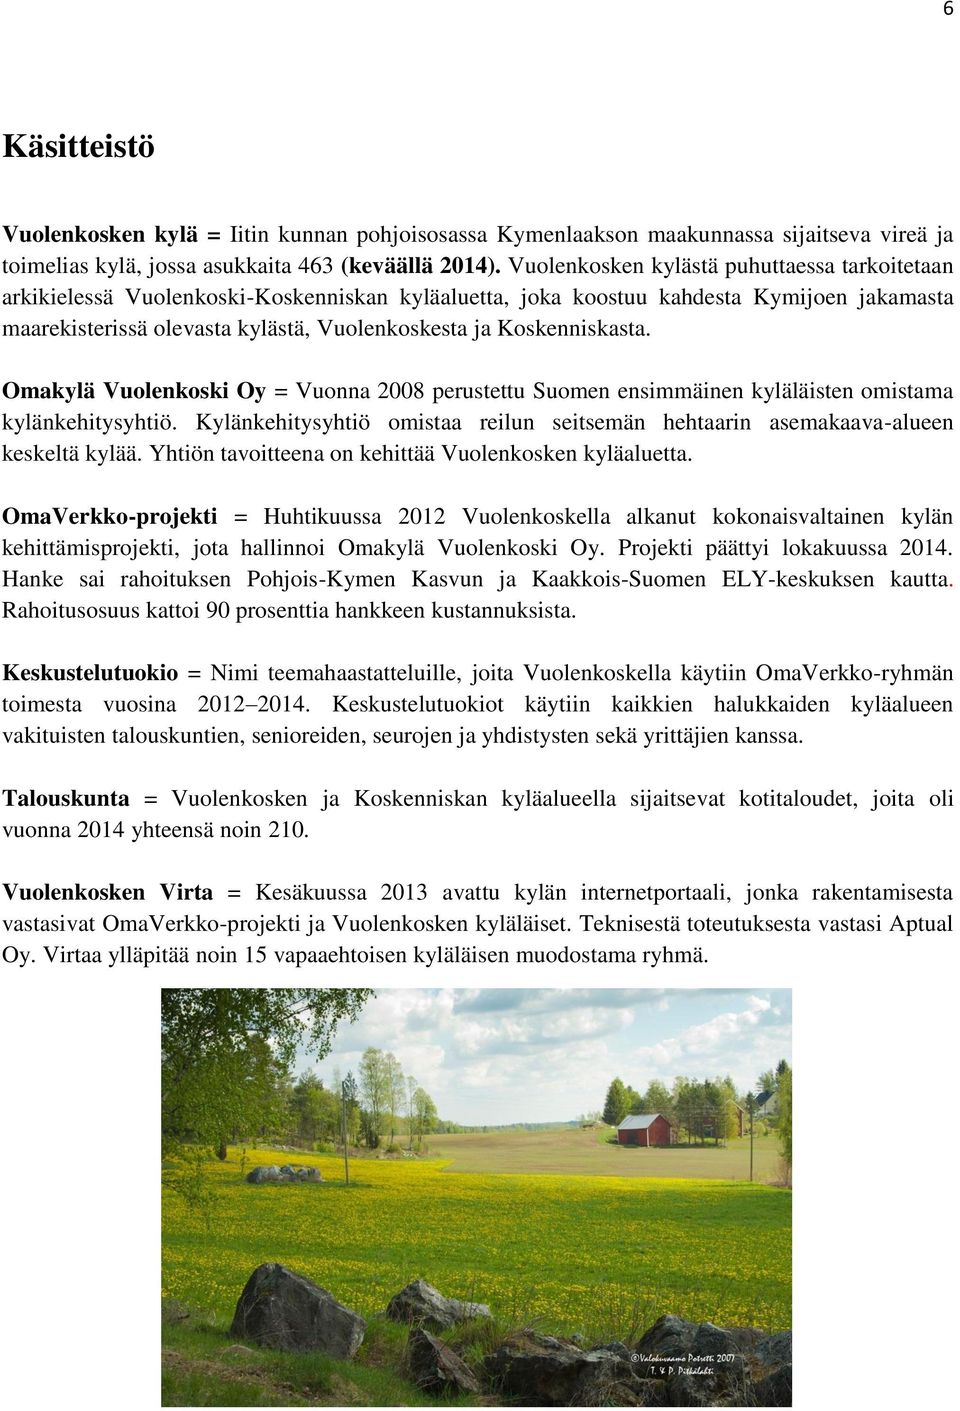 Koskenniskasta. Omakylä Vuolenkoski Oy = Vuonna 2008 perustettu Suomen ensimmäinen kyläläisten omistama kylänkehitysyhtiö.